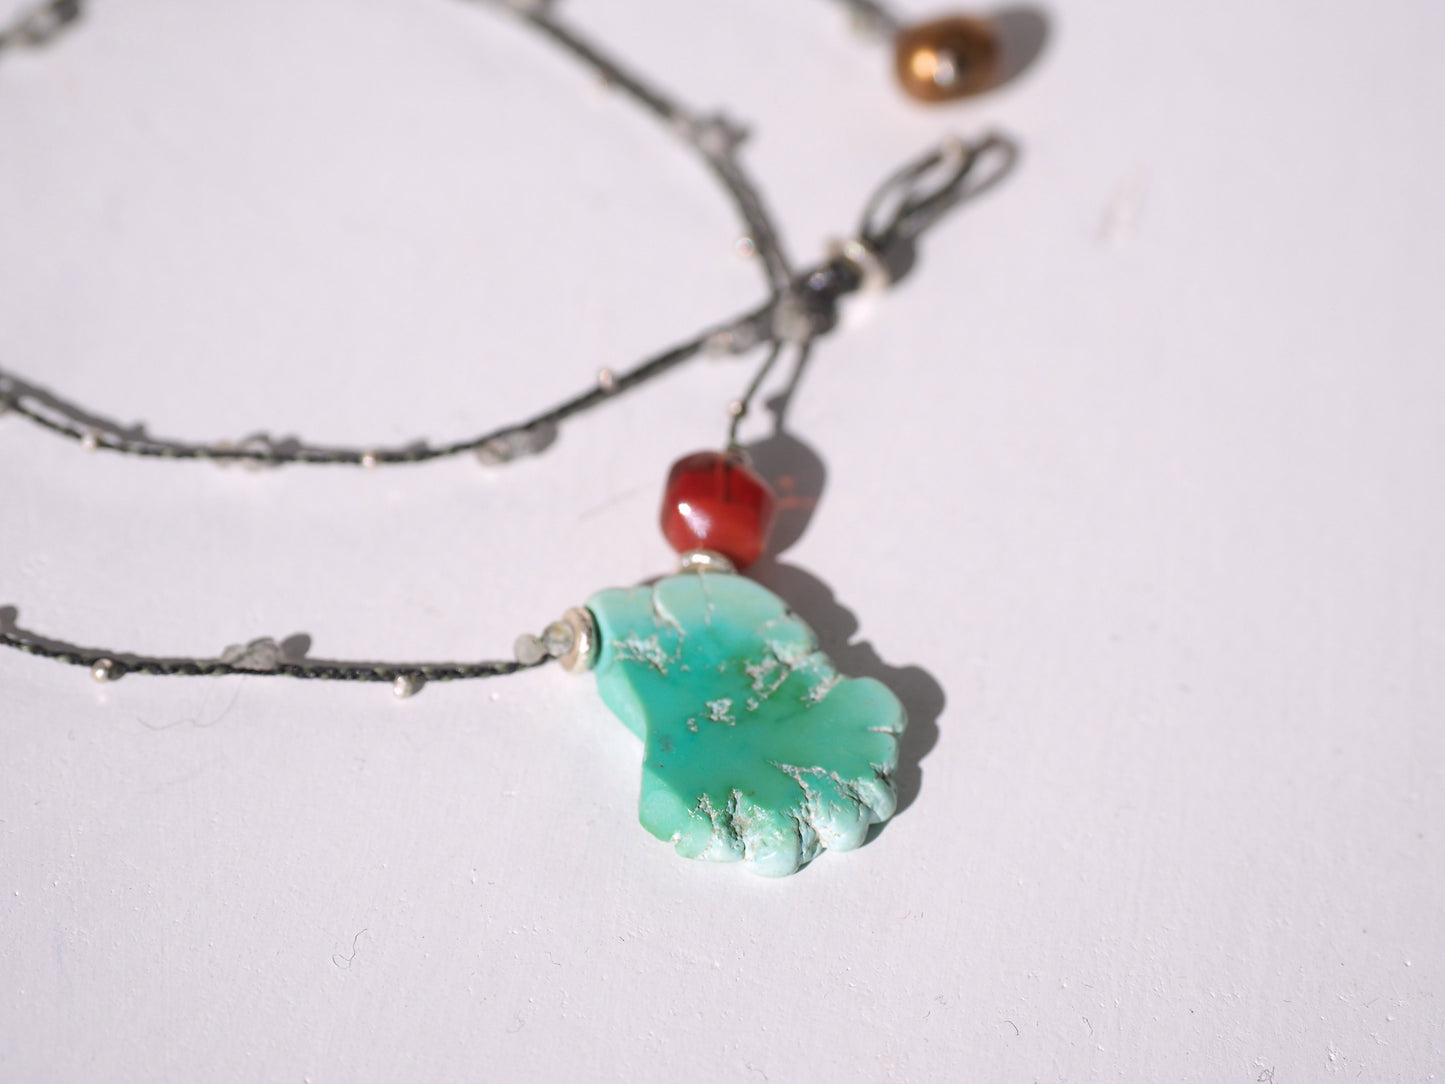 -Sleeping_beauty turquoise・Tibetan andesine- braid pendant